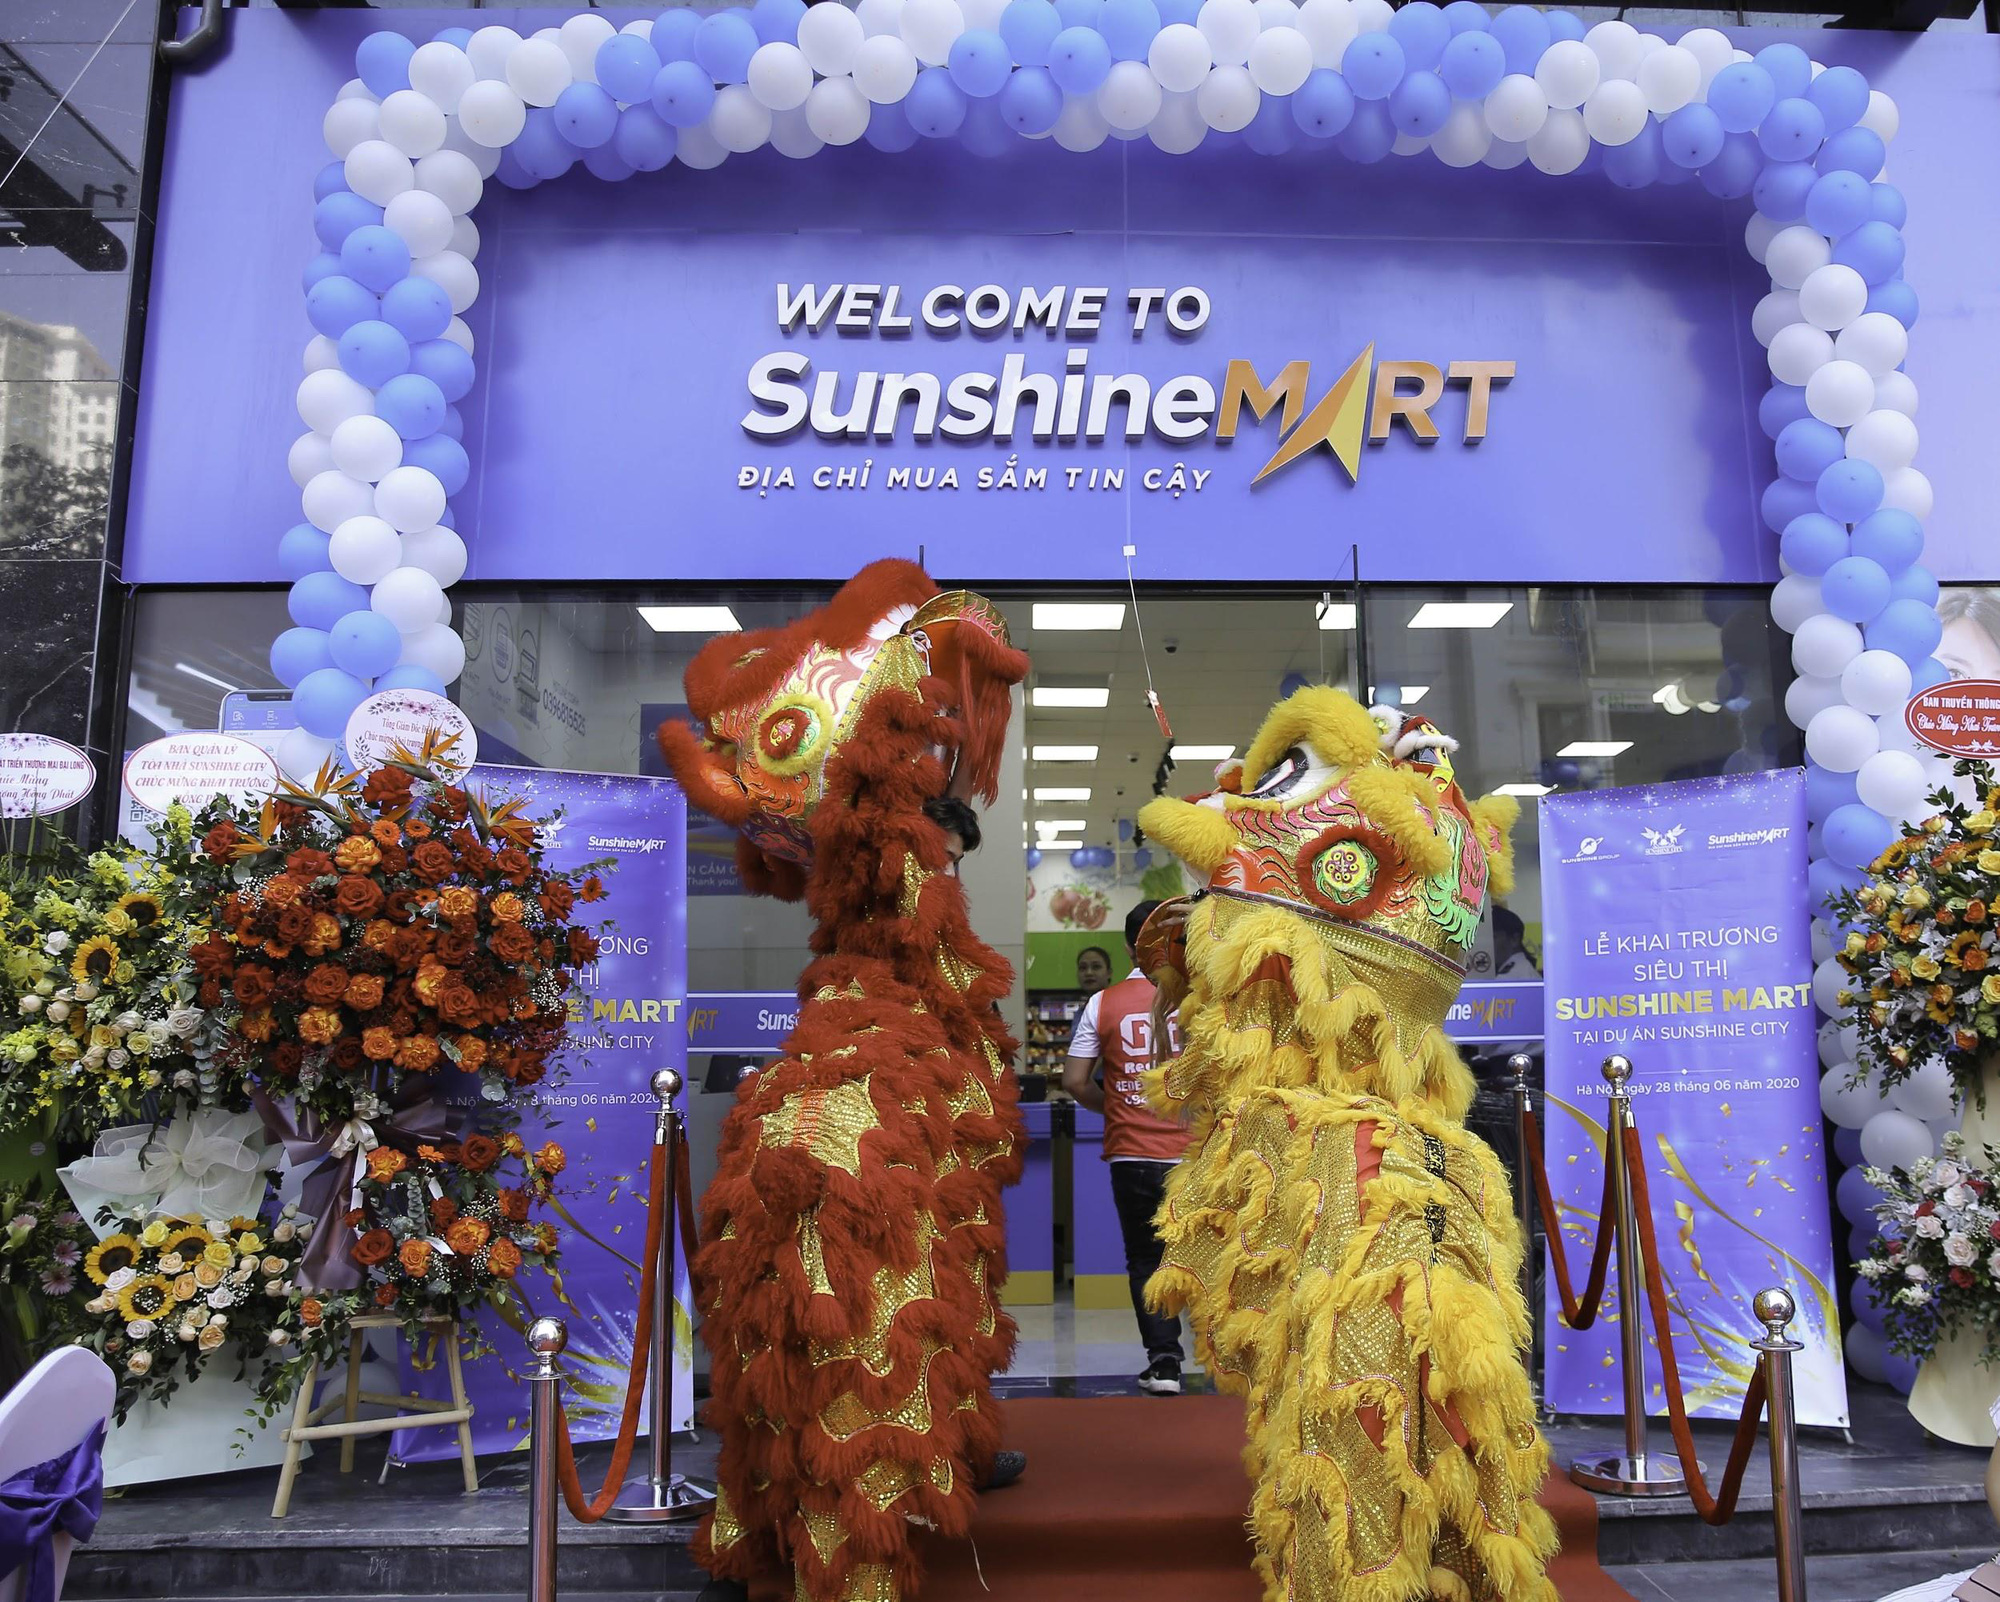 Sunshine City khai trương siêu thị Sunshine Mart - “Thế giới mua sắm” ngay dưới chân tòa nhà cho cư dân